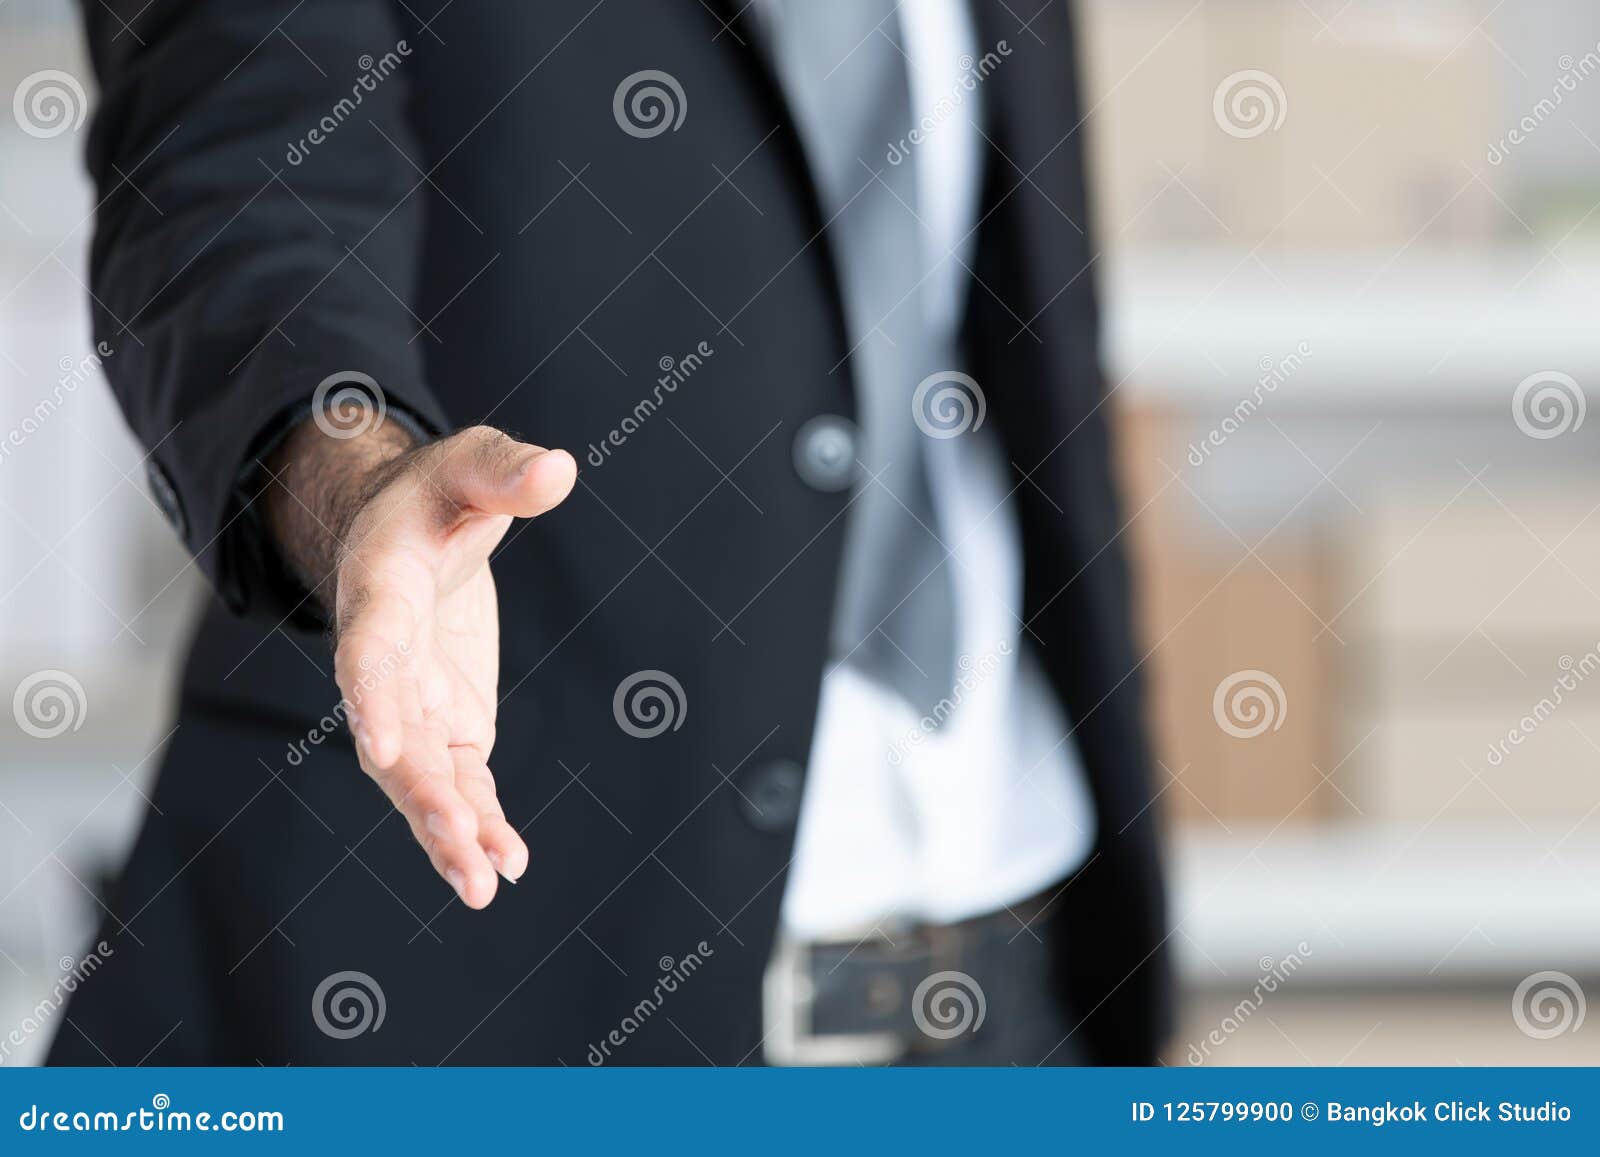 Крепись белый. Рукопожатие открытой ладонью. Клоун пожимает руку бизнесмену. Равенство руки. Фото сверху мужчина в костюме раскрыл ладонь.